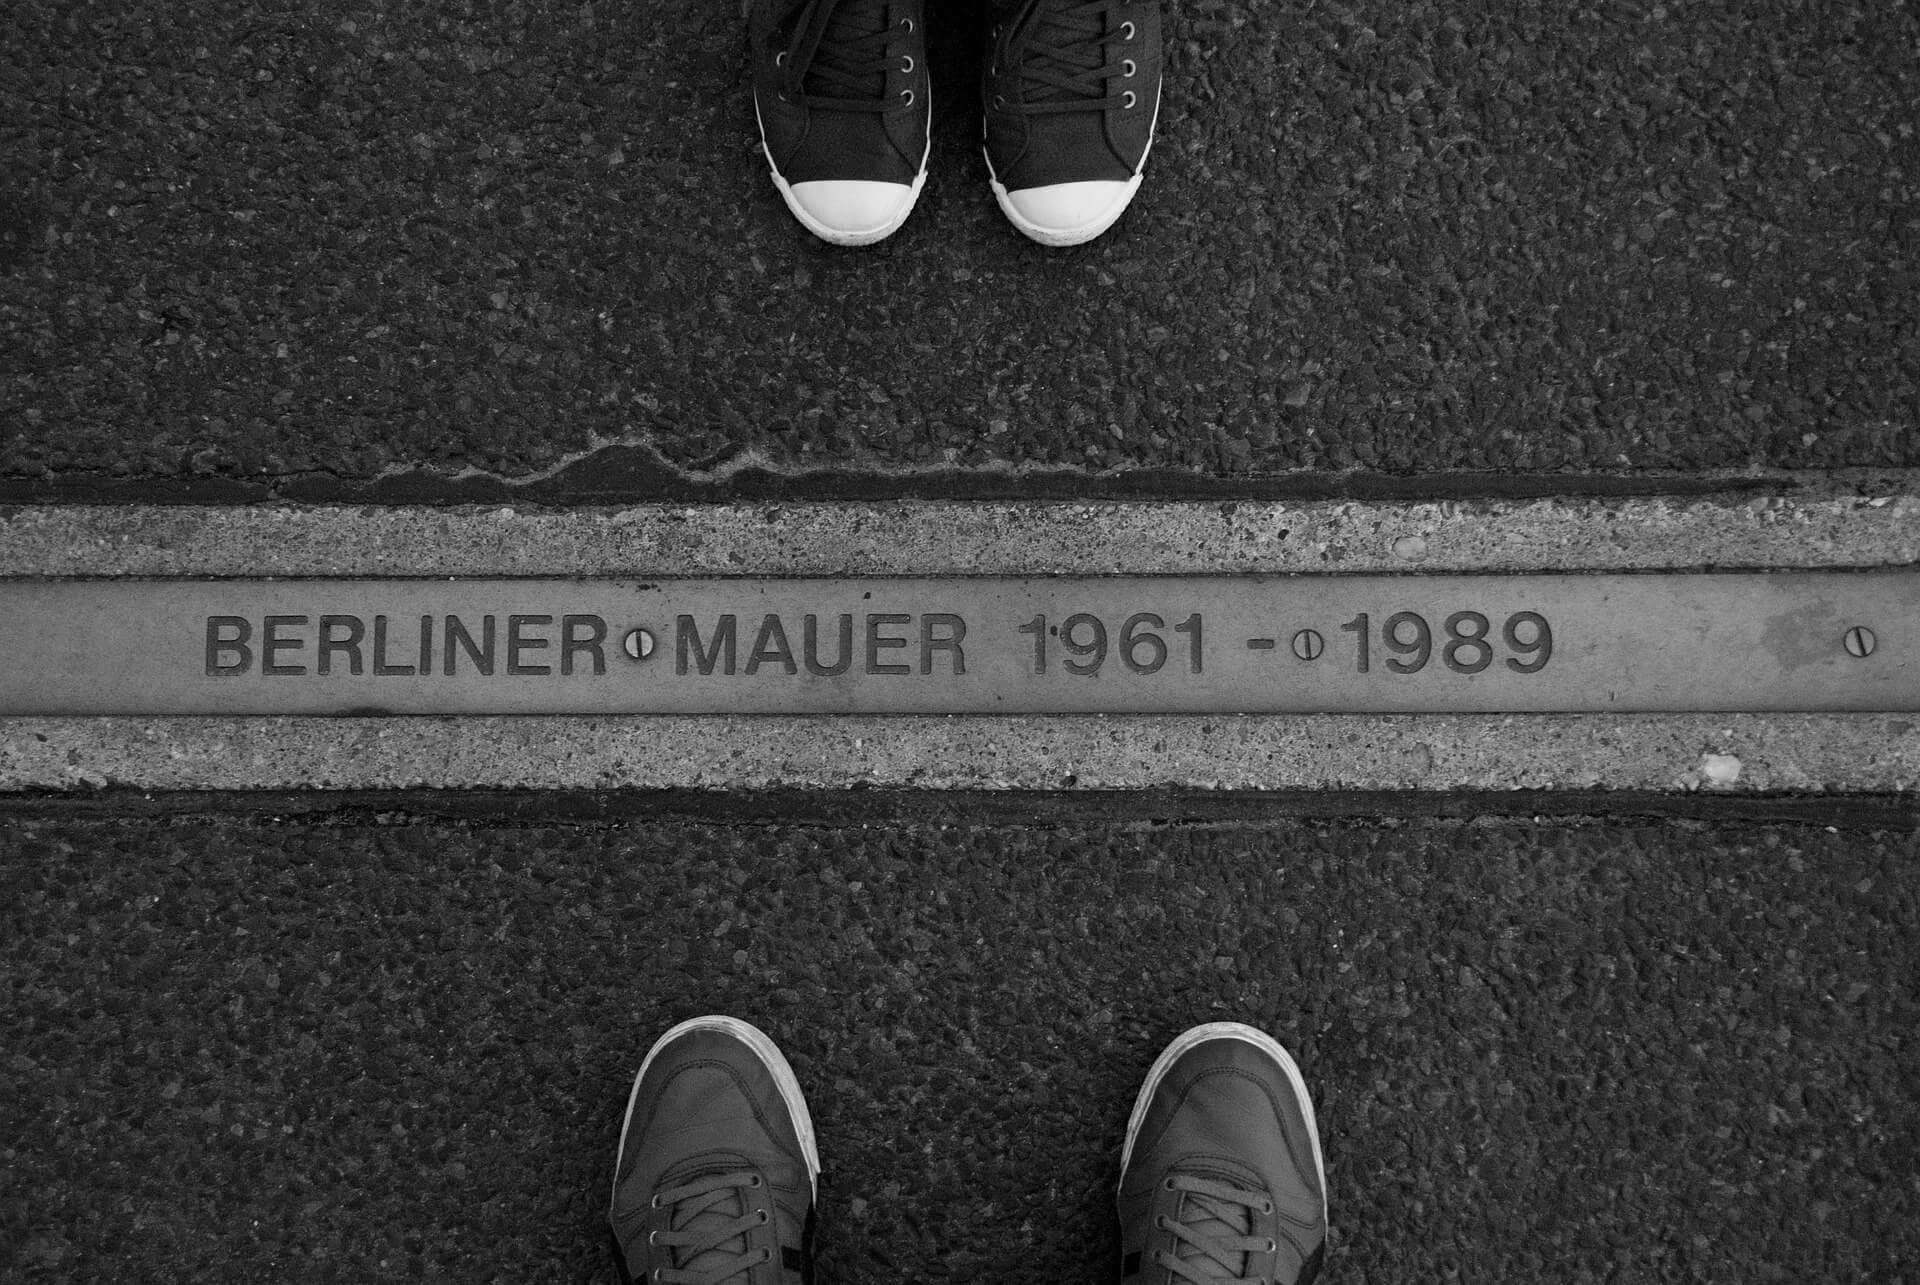 In den Boden eingelassene Platte erinnert an die Berliner Mauer von 1961 bis 1989 und damit an die deutsch-deutsche Teilung